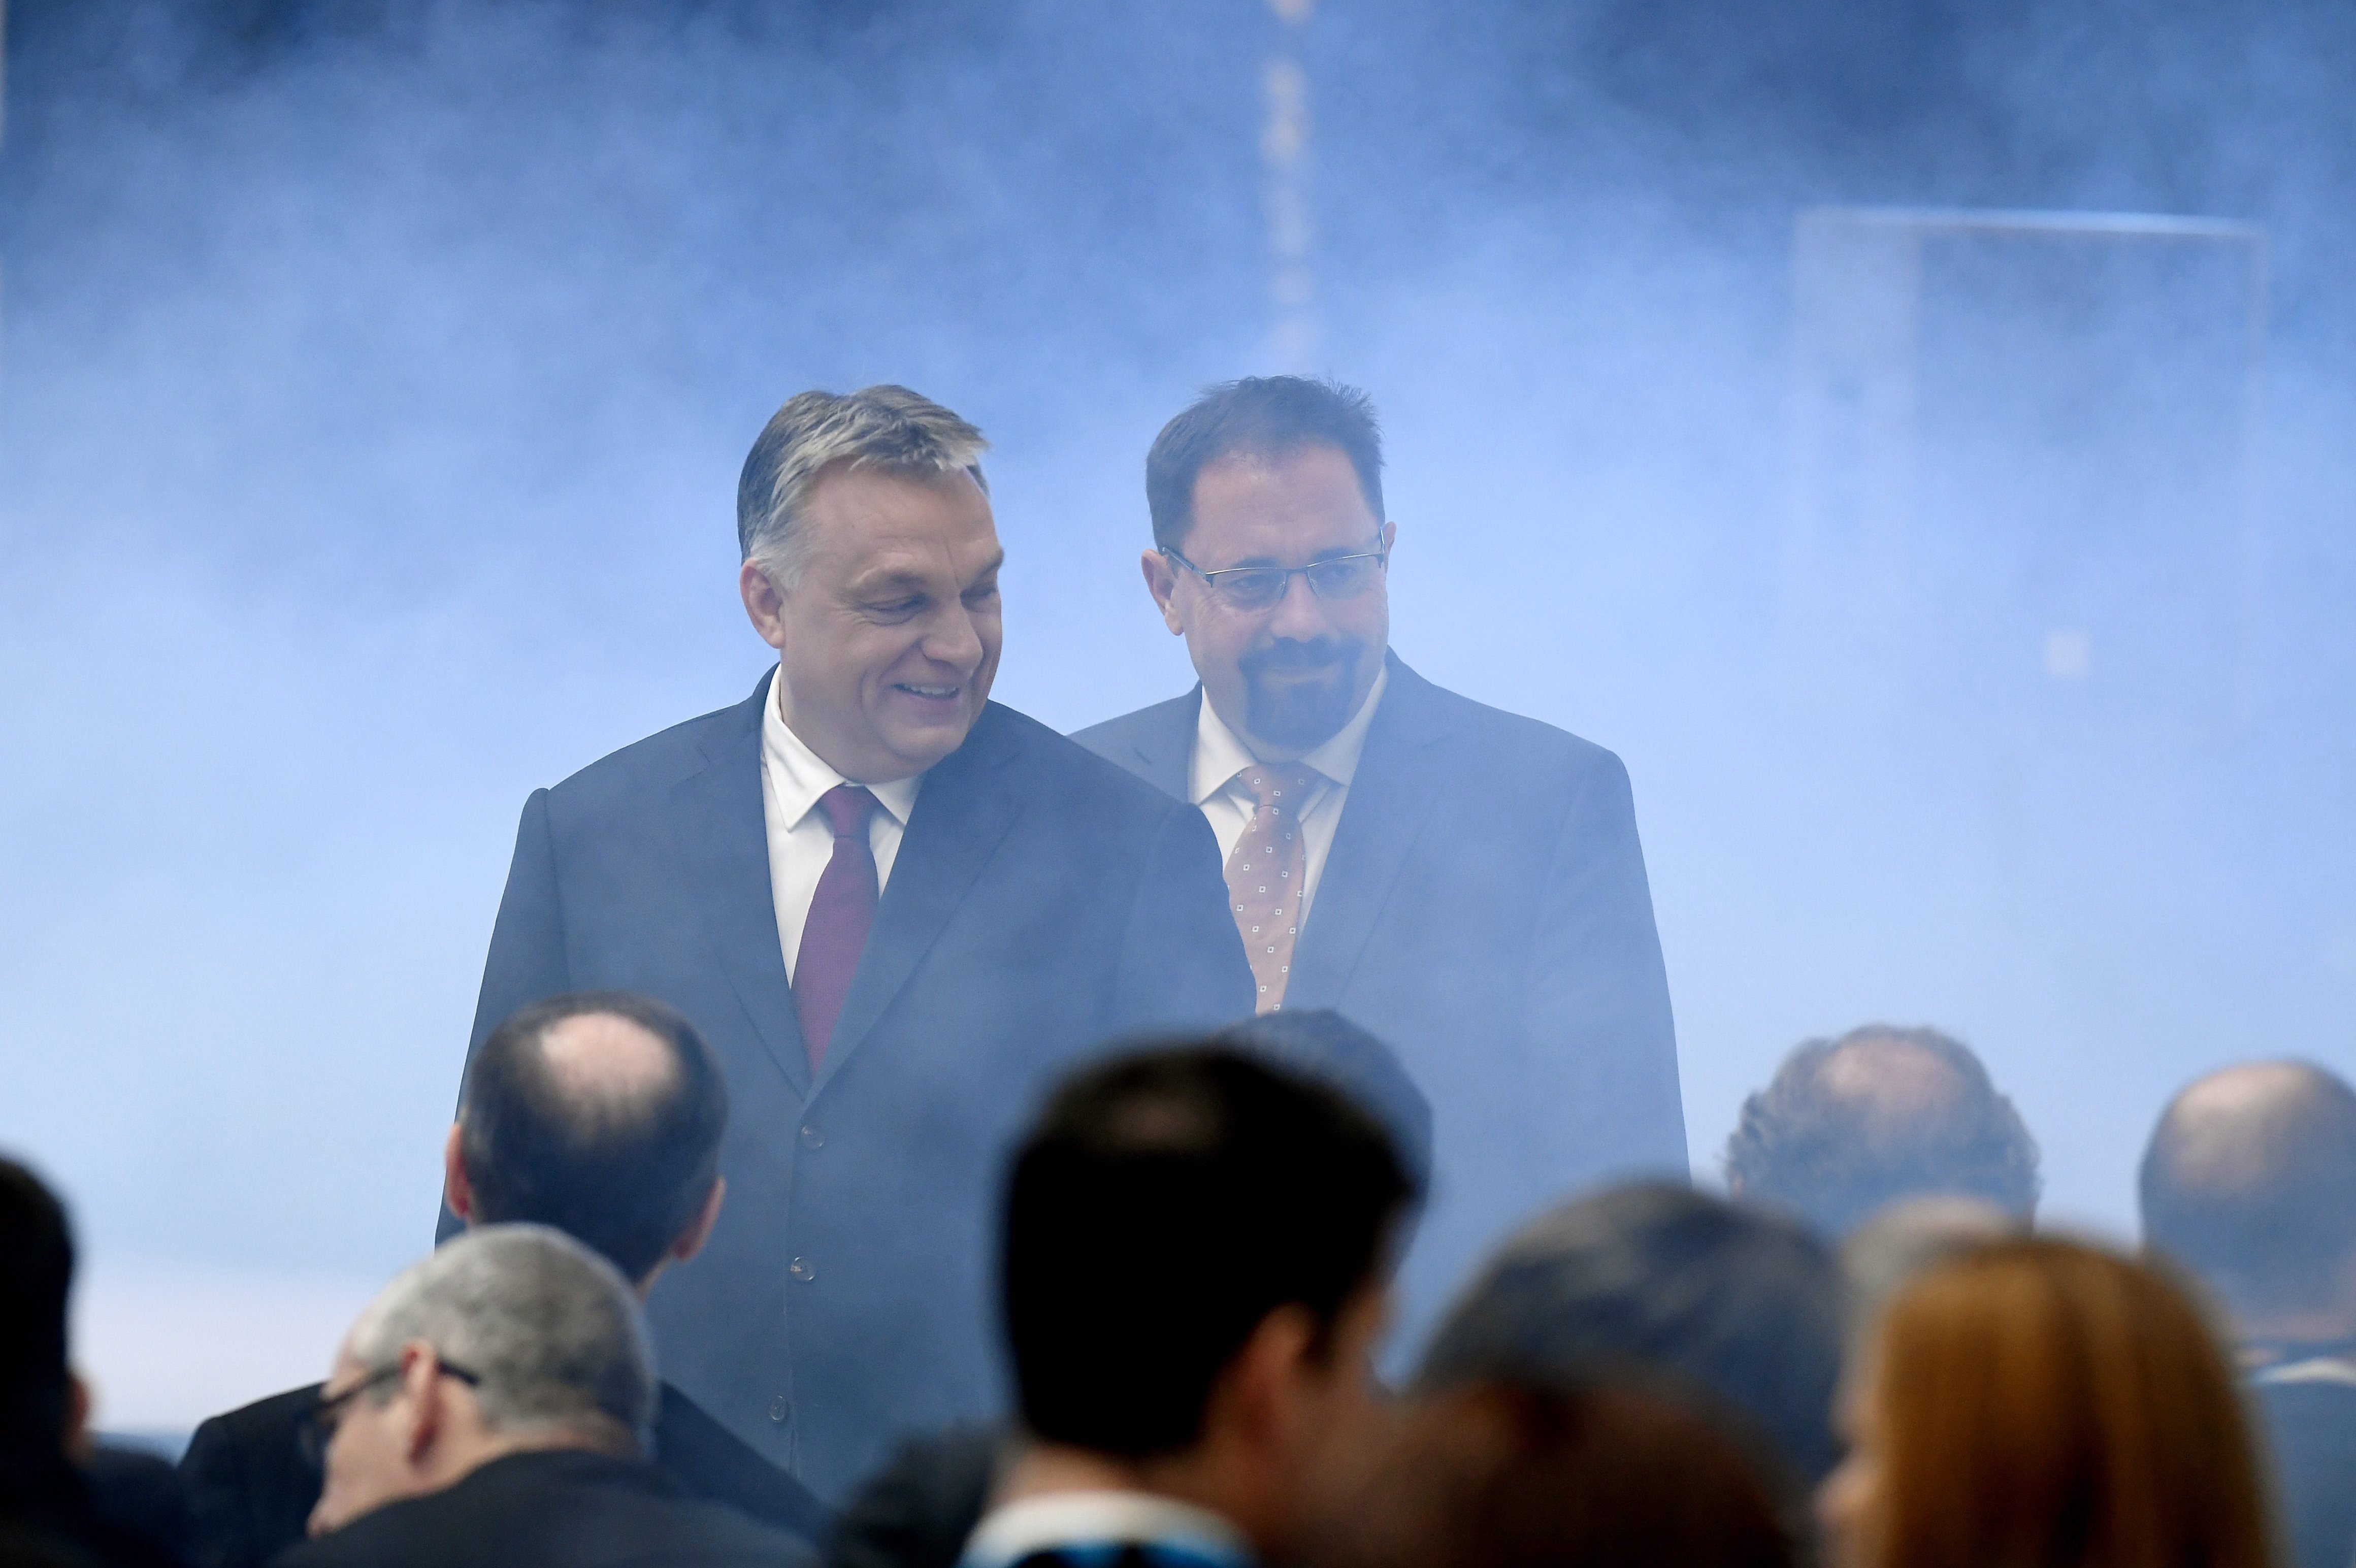 Levélben kérik Orbántól, hogy mondassa le Pócs Jánost, mert "egyetlen emberrel, egyetlen alkalmazottal sem bánhat így egy polgármester"